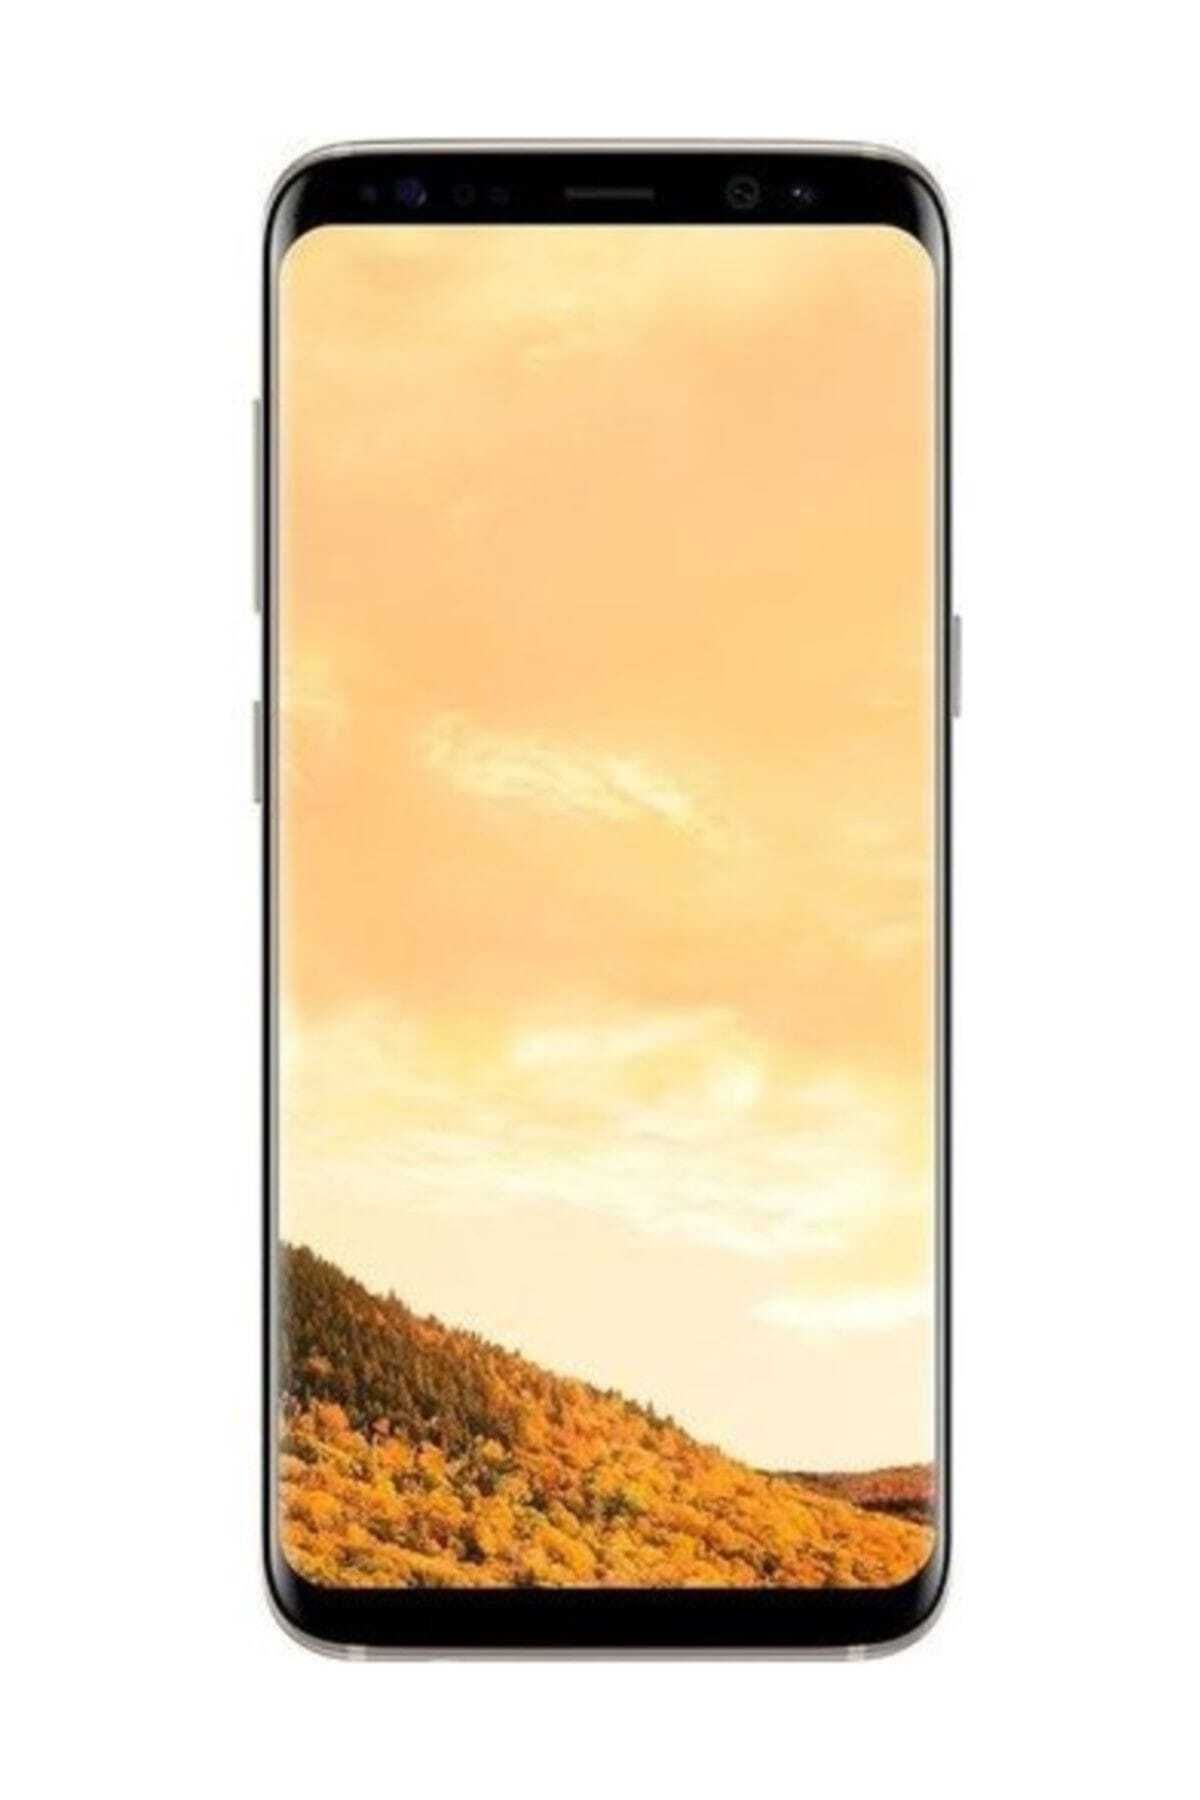 Samsung Galaxy S8 Gold 64gb Yenilenmiş B Kalite (12 AY GARANTİLİ)